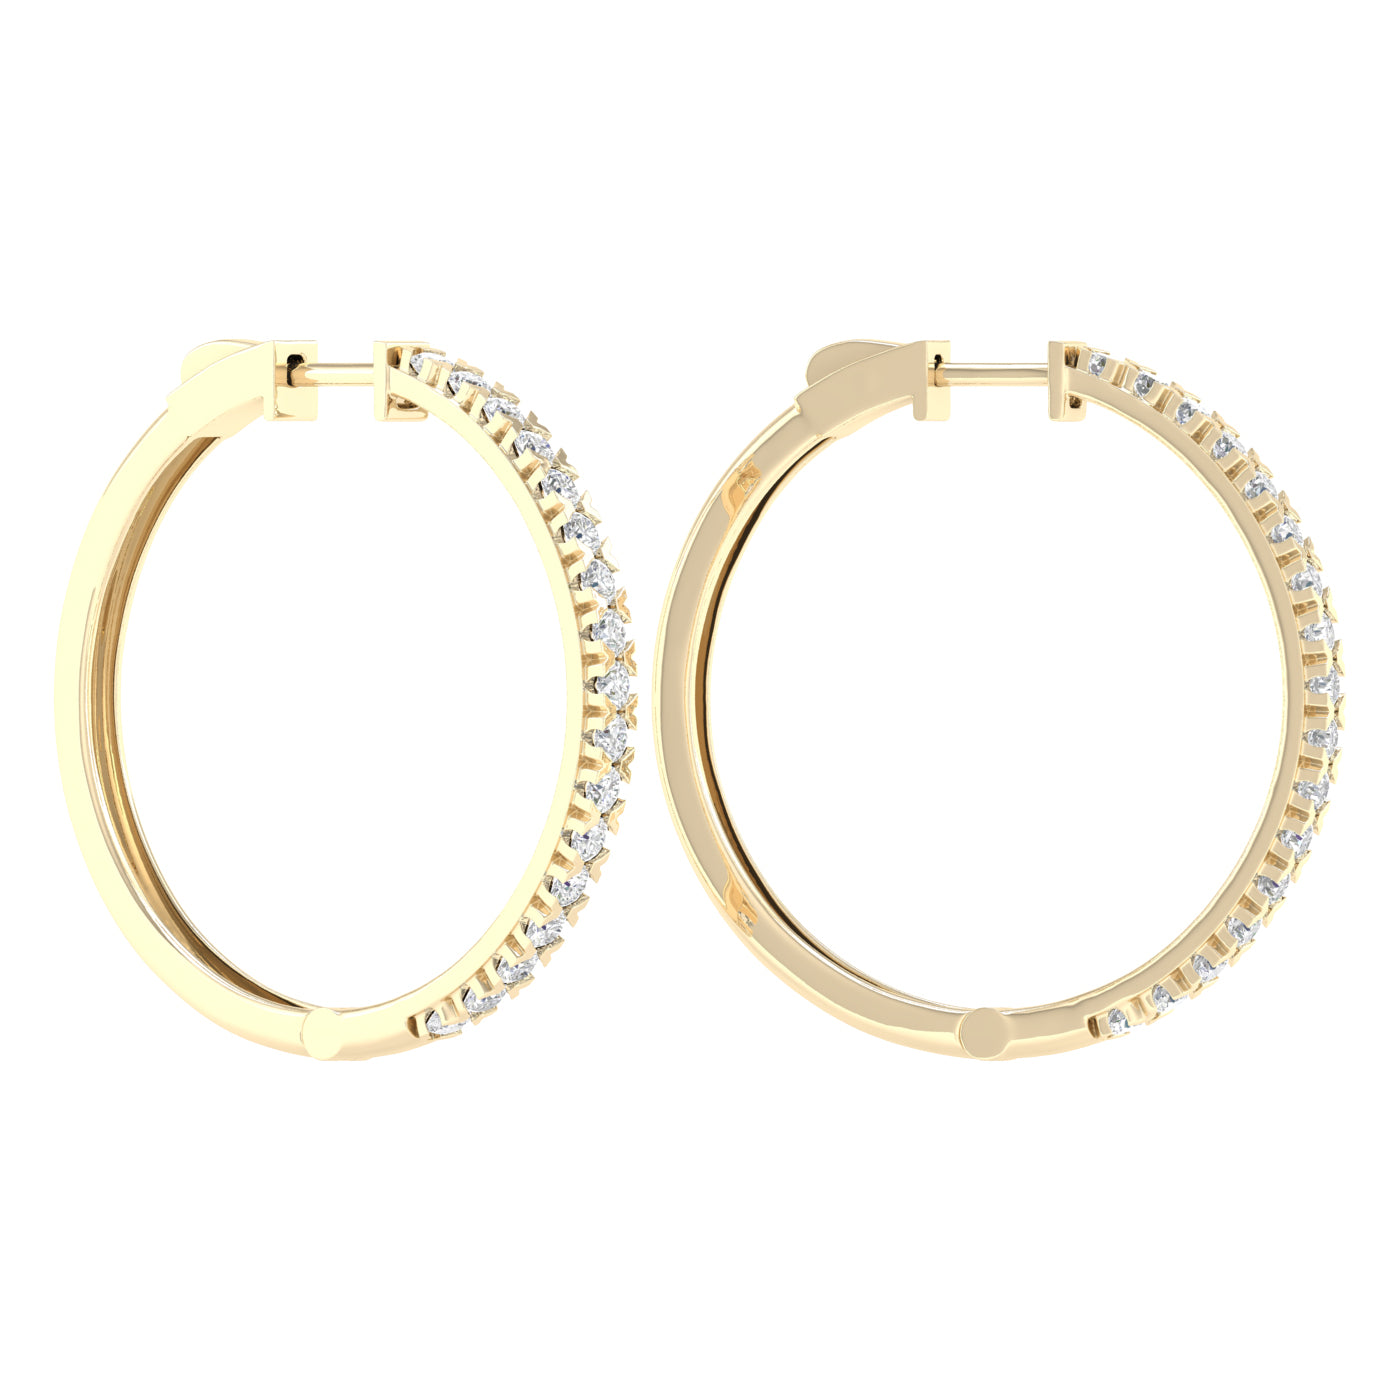 2 Carat Round Lab Grown Diamond 14K Gold Hoop Earrings